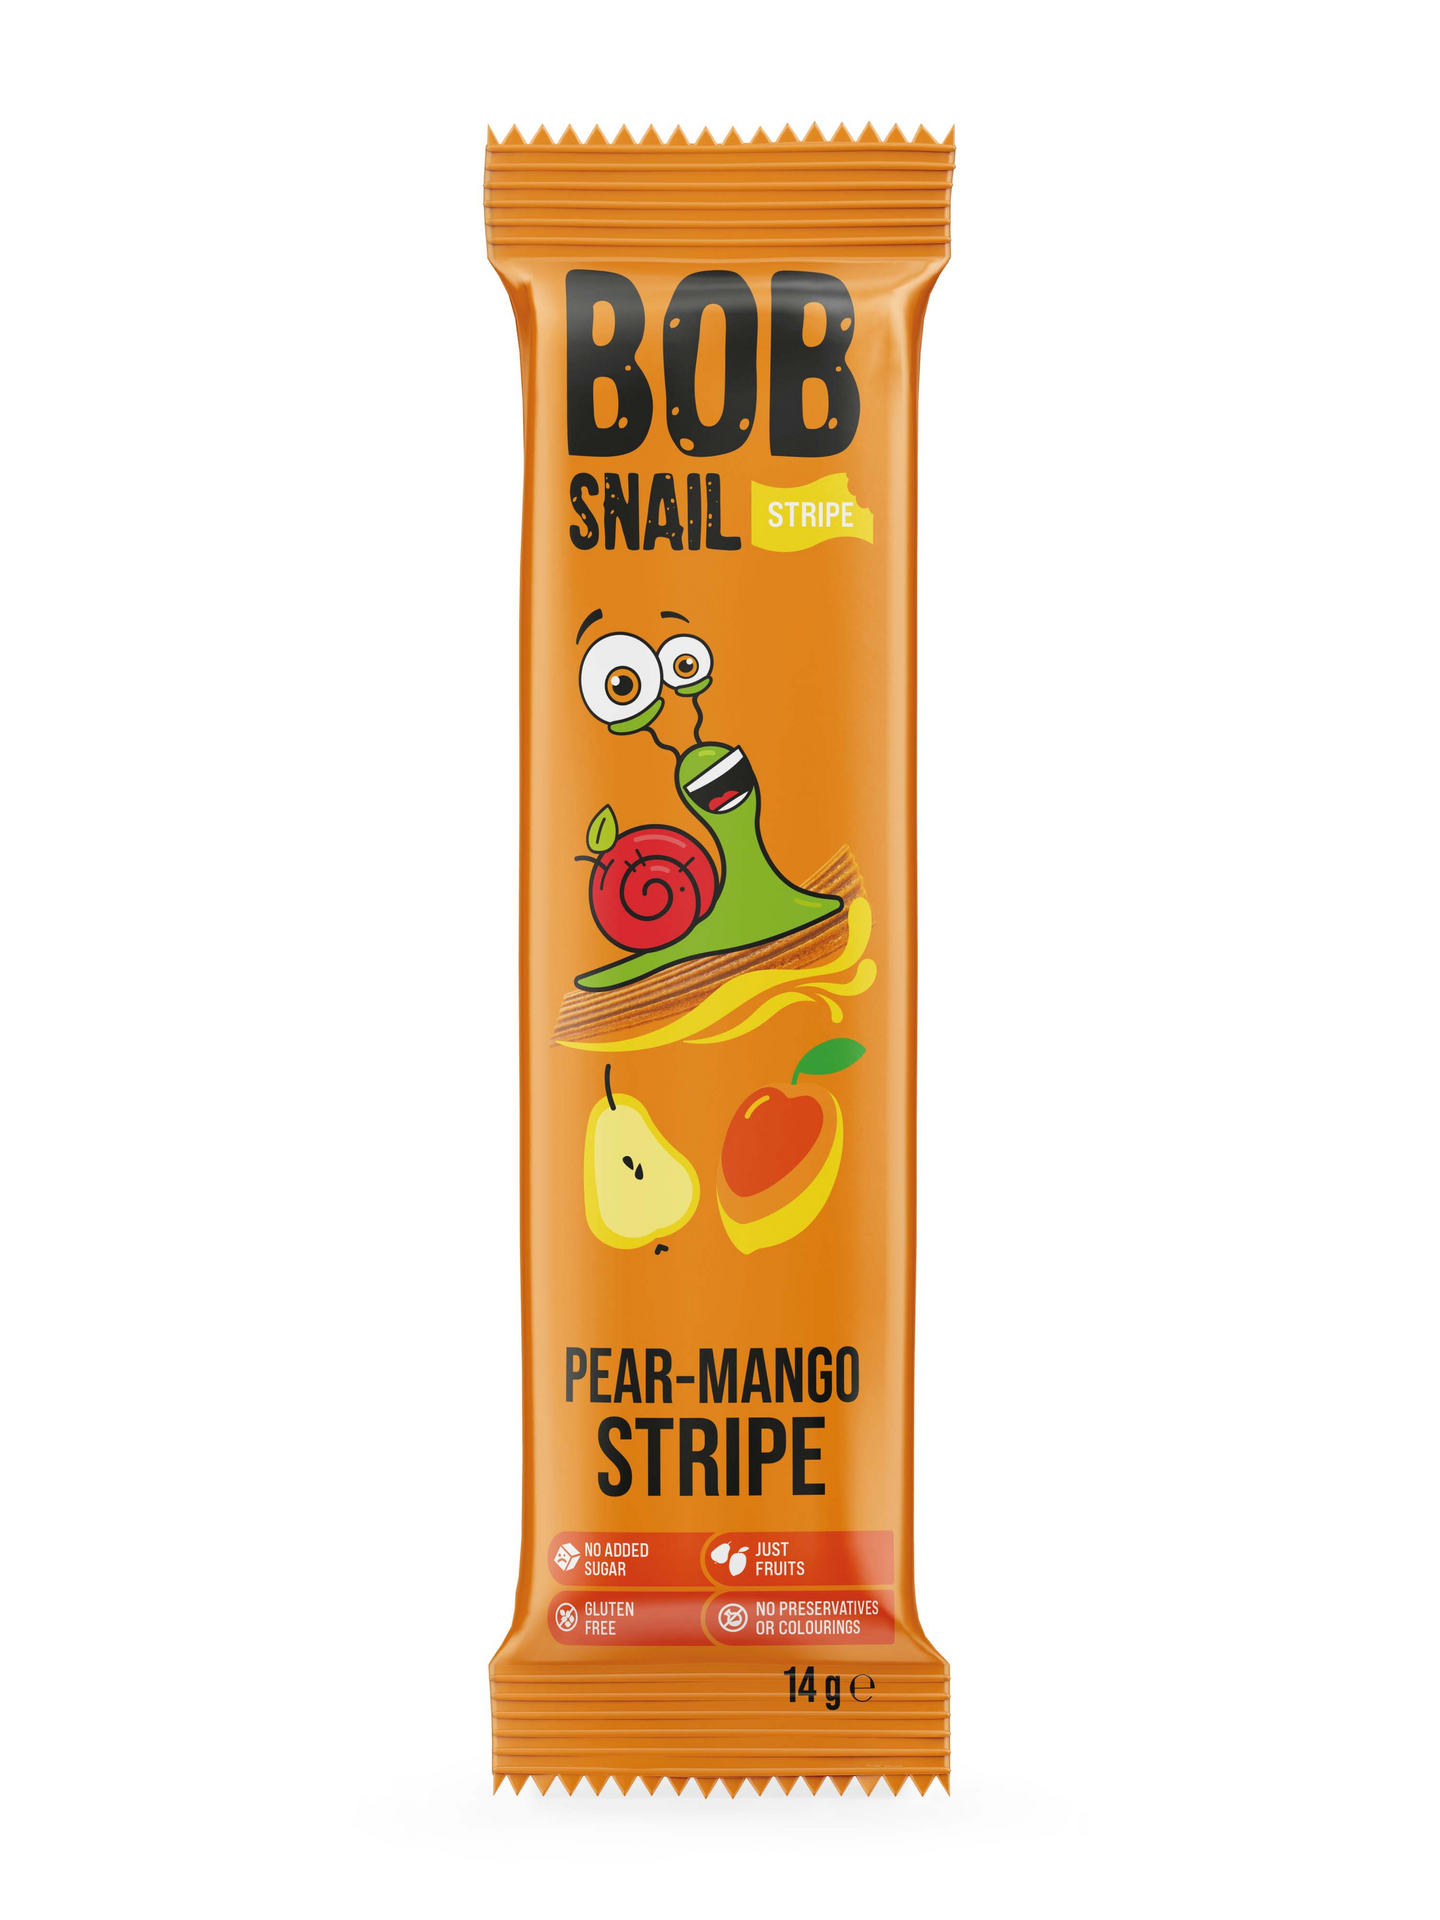 Bob Snail päärynä-mangomatto 14g